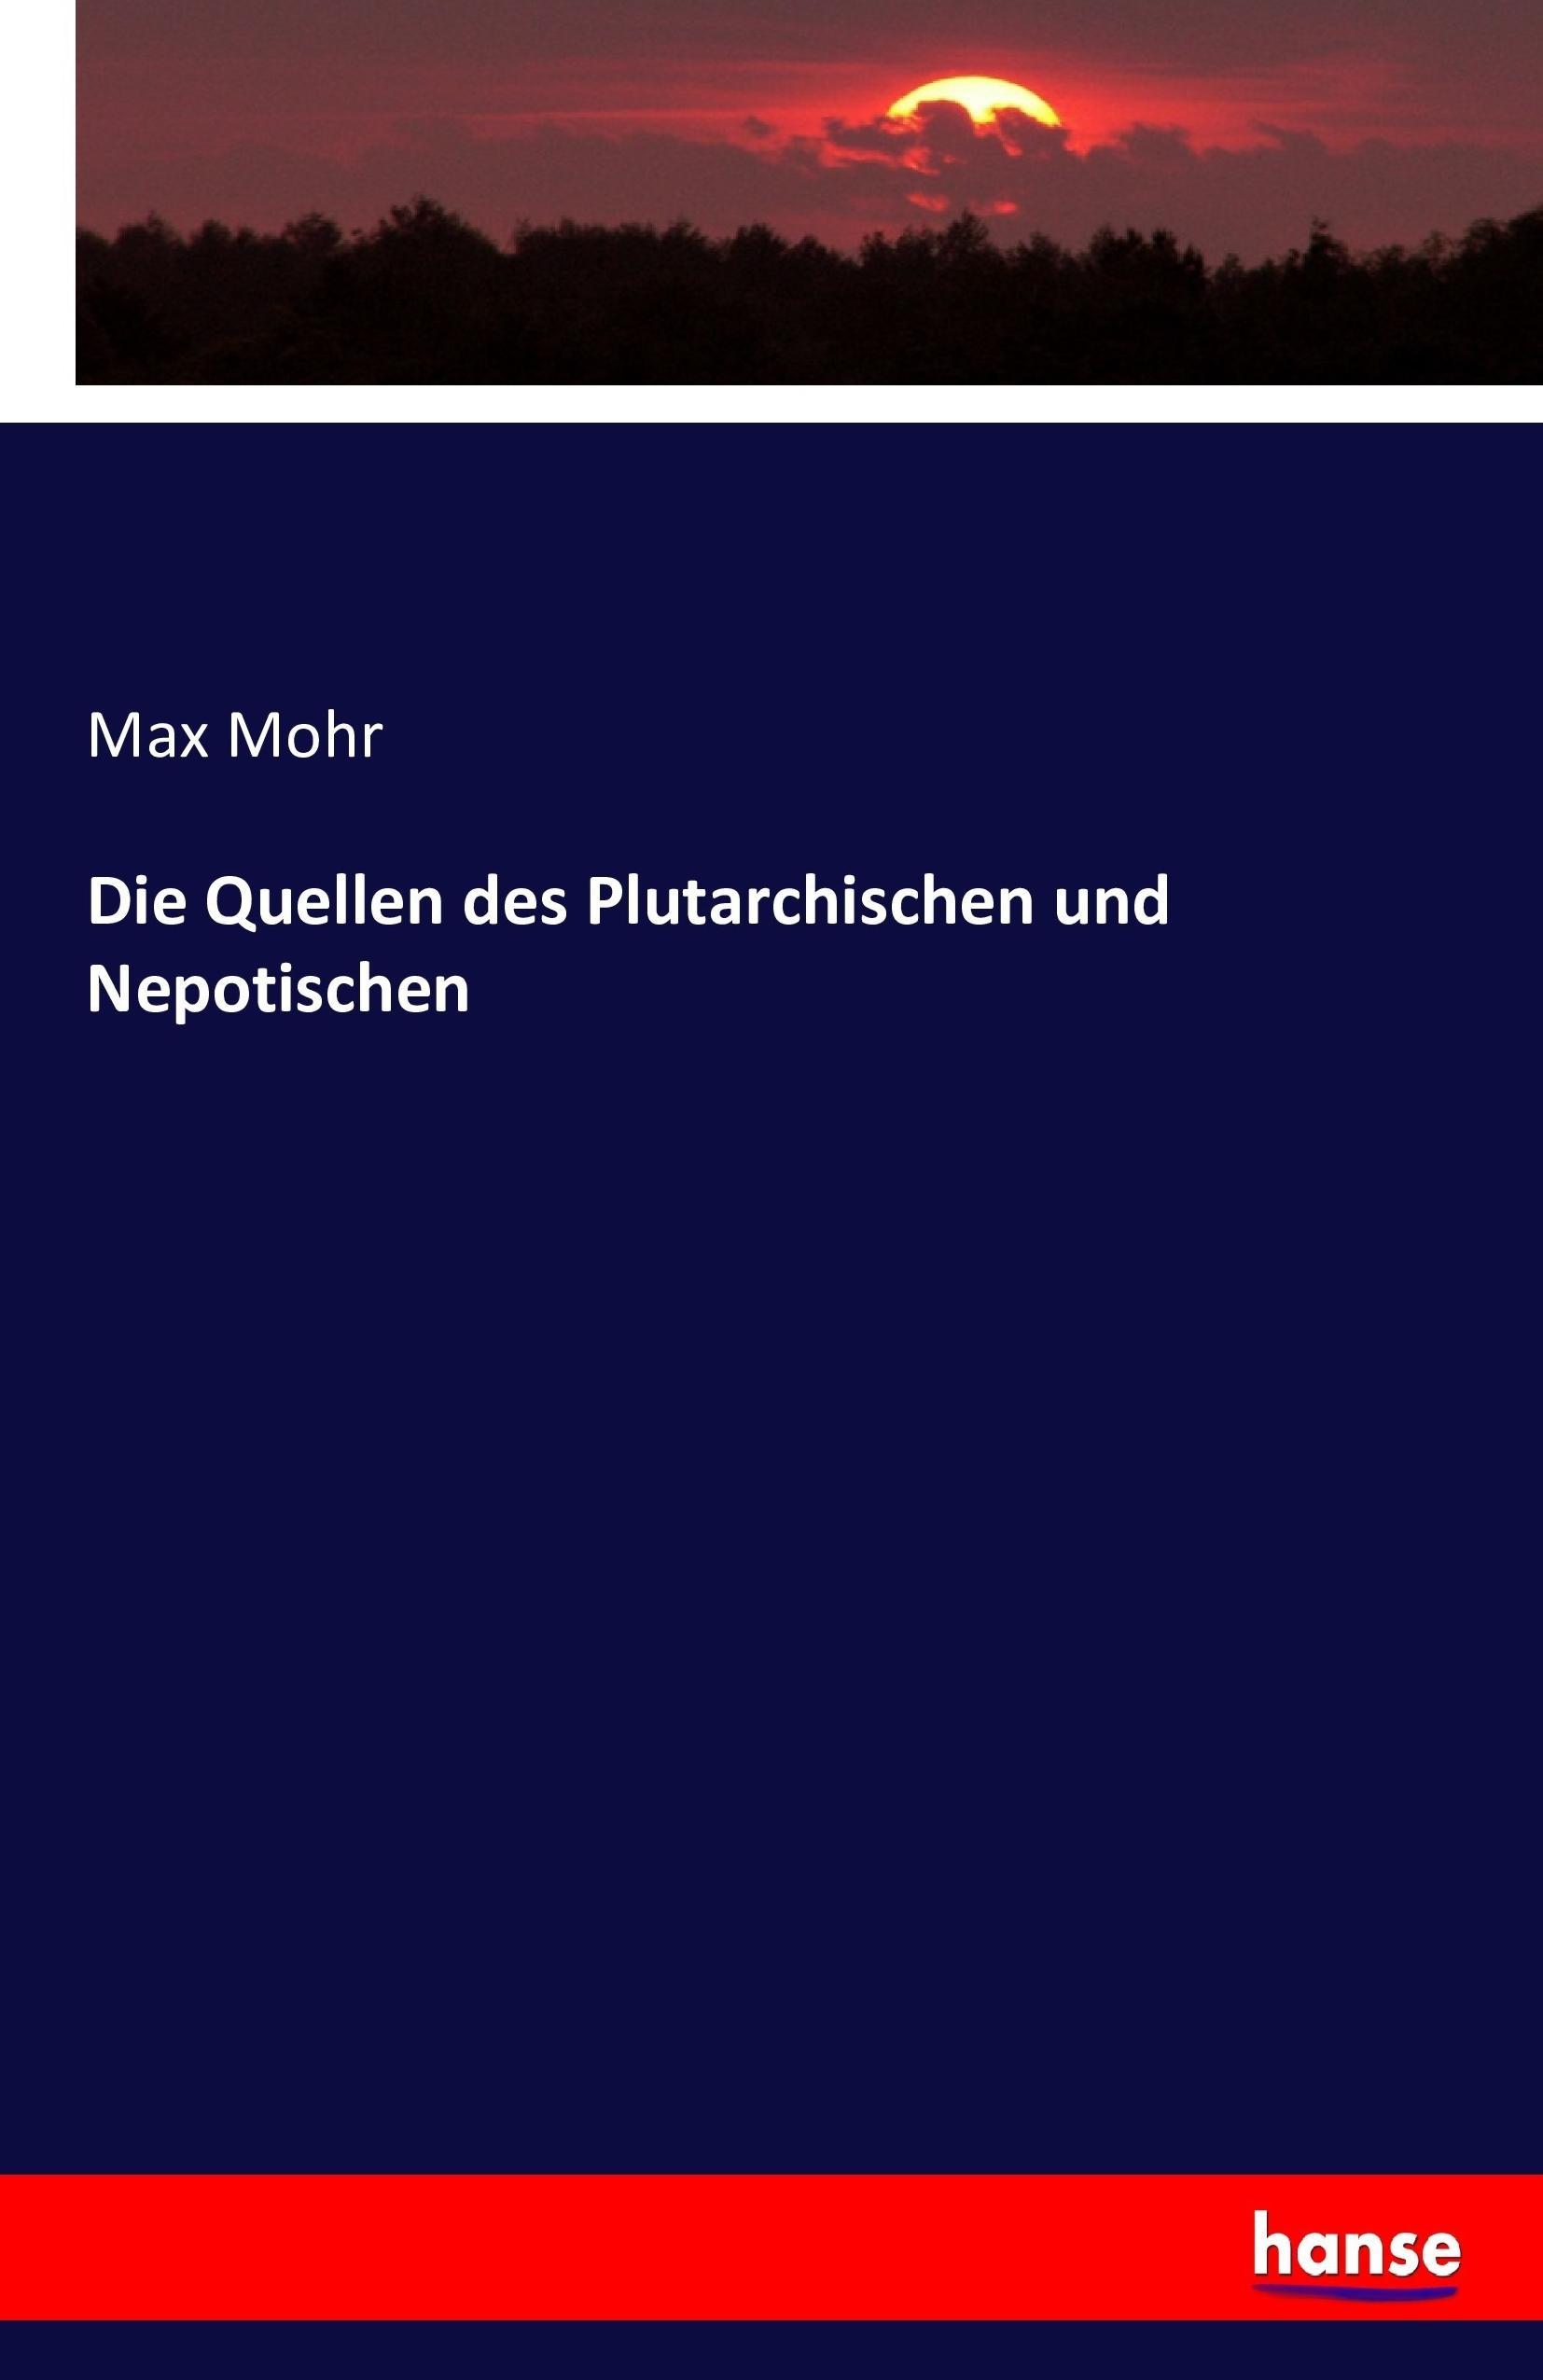 Die Quellen des Plutarchischen und Nepotischen - Mohr, Max